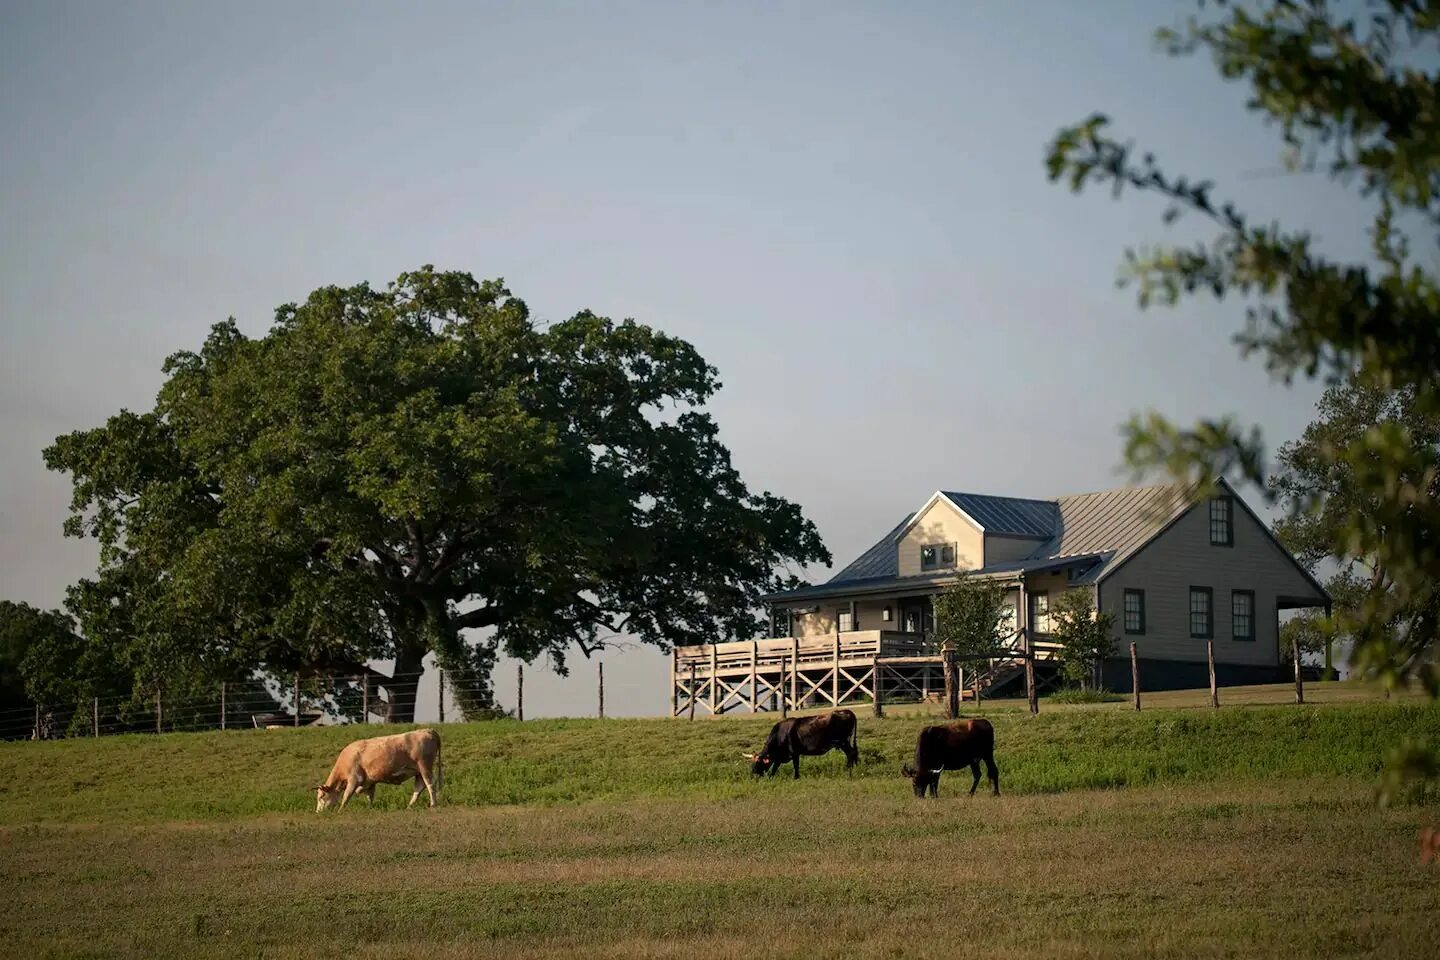 Ранчо ферма США. Техас США ранчо. Техас скотоводческое ранчо. Американская ферма штат Канзас.